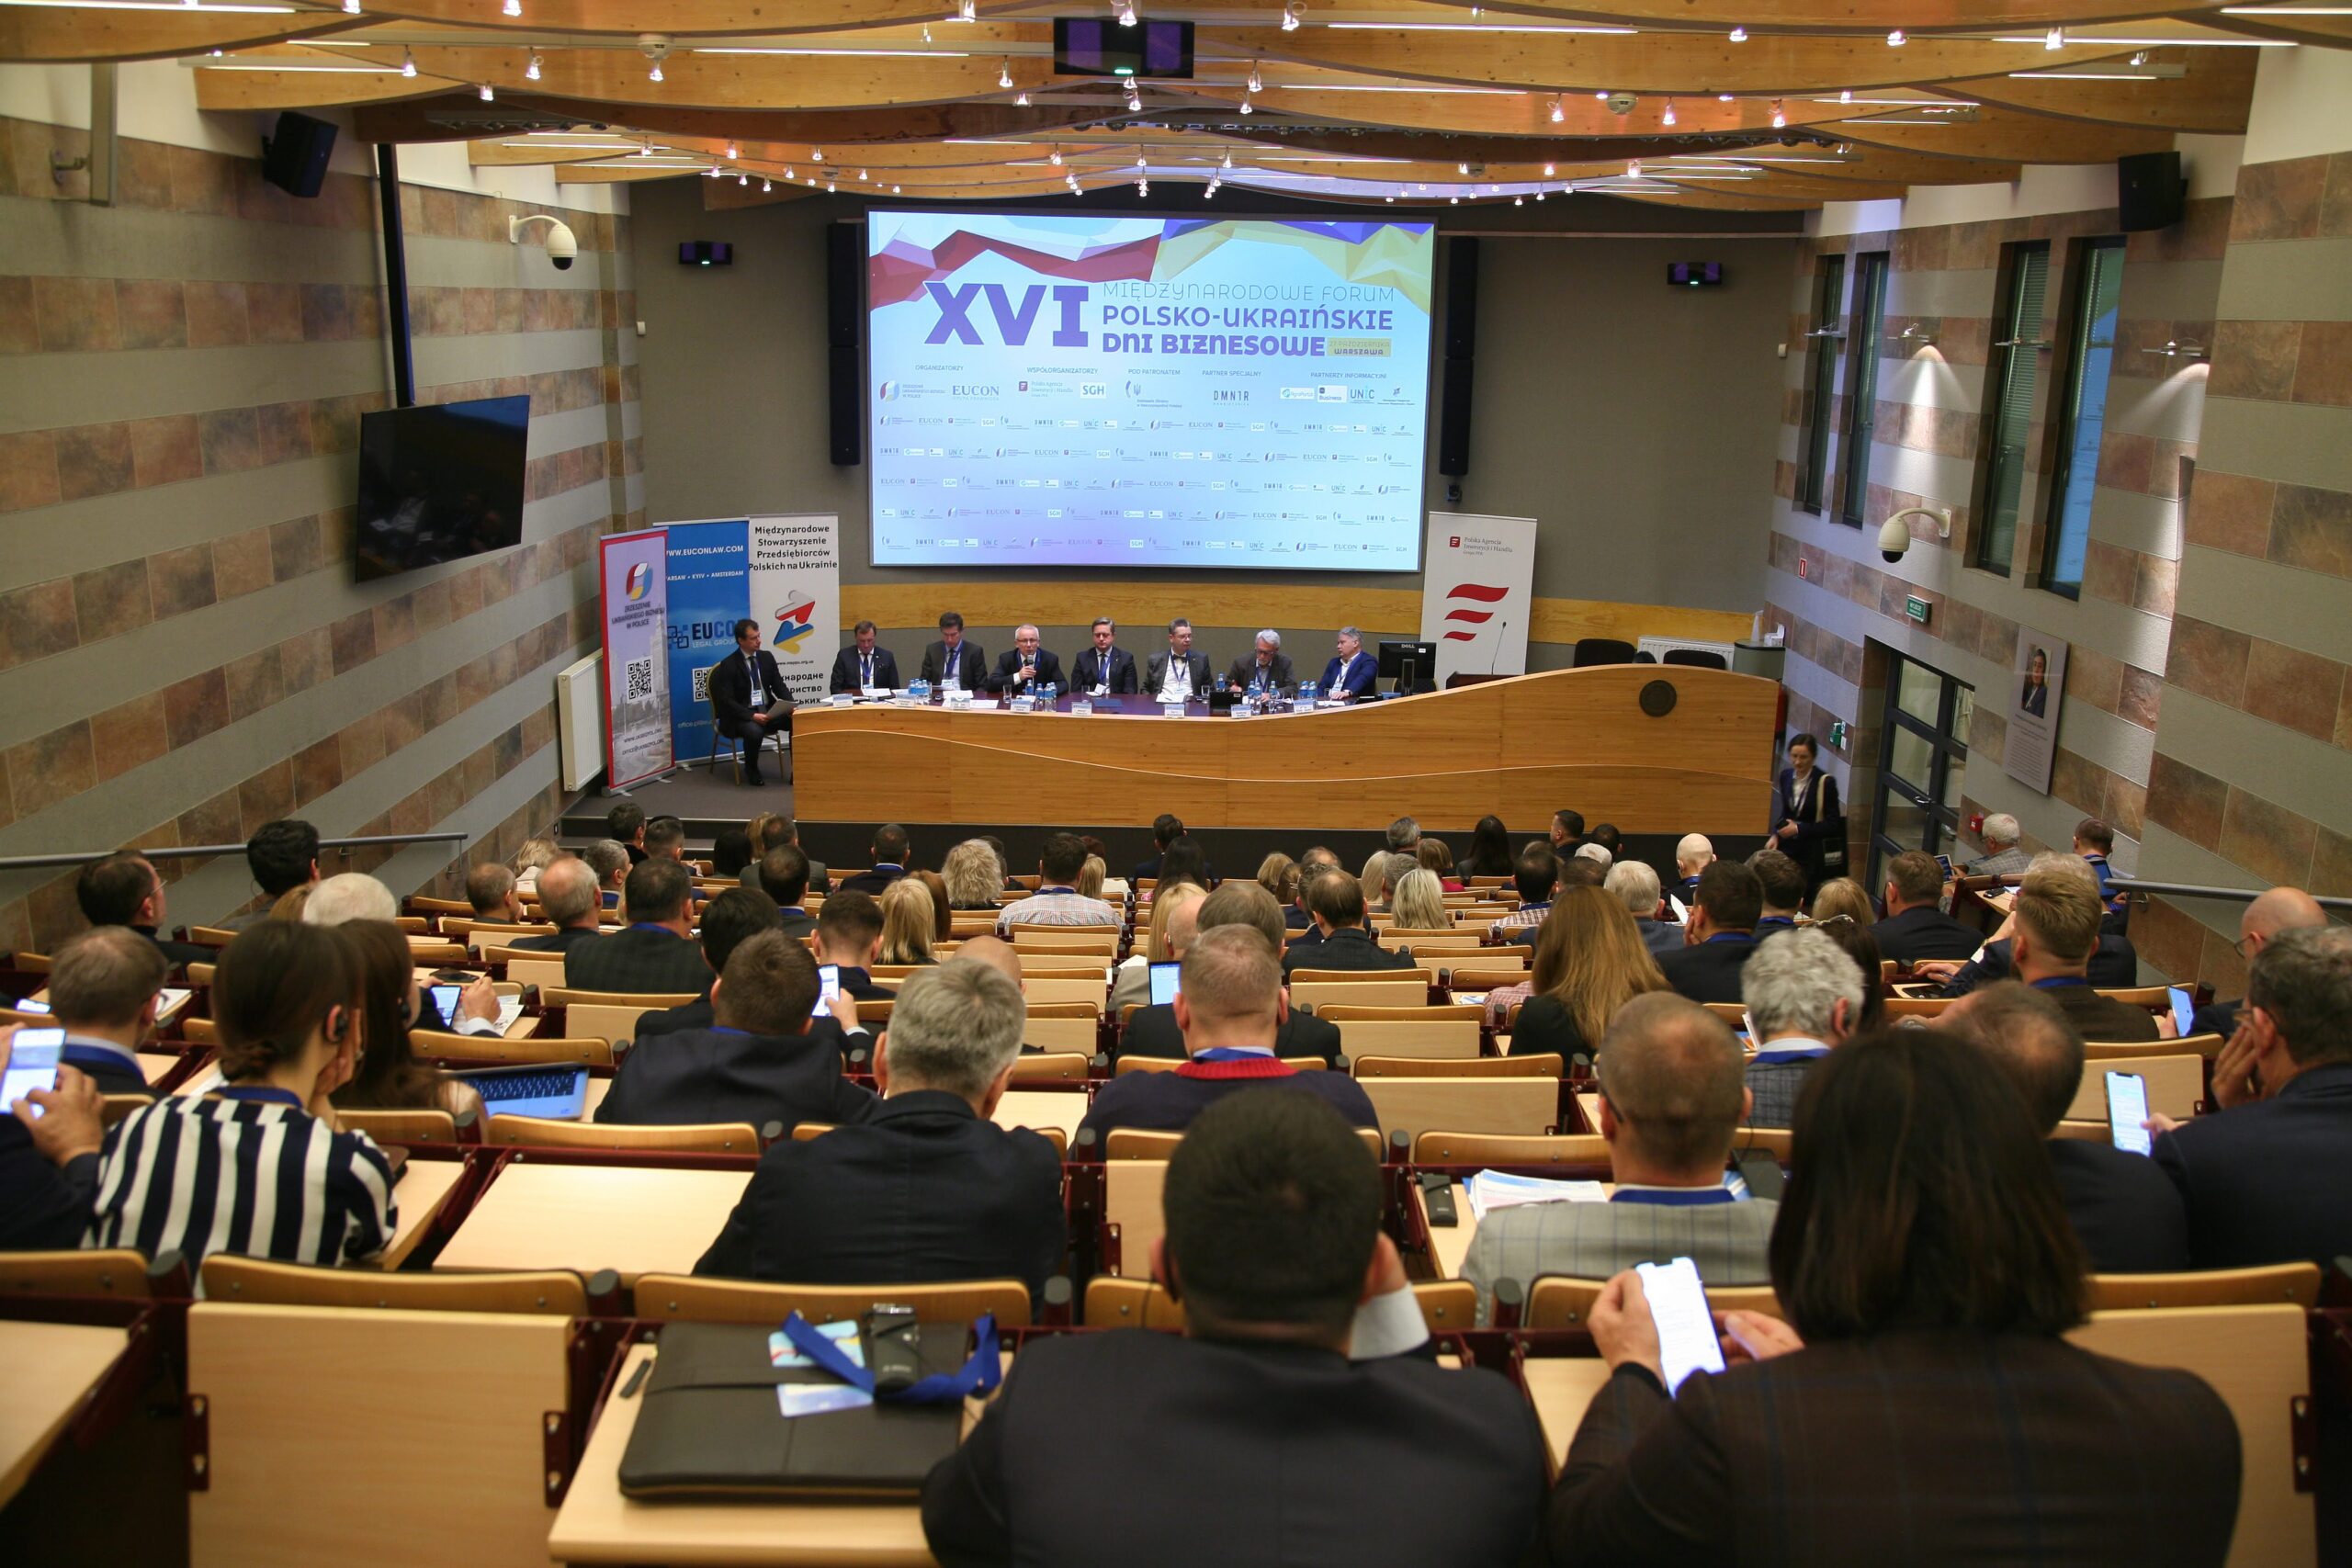 Синергія в ім’я перемоги, відбудови й майбутнього: у Варшаві відбувся ХVI Міжнародний форум «Польсько-українські дні бізнесу»